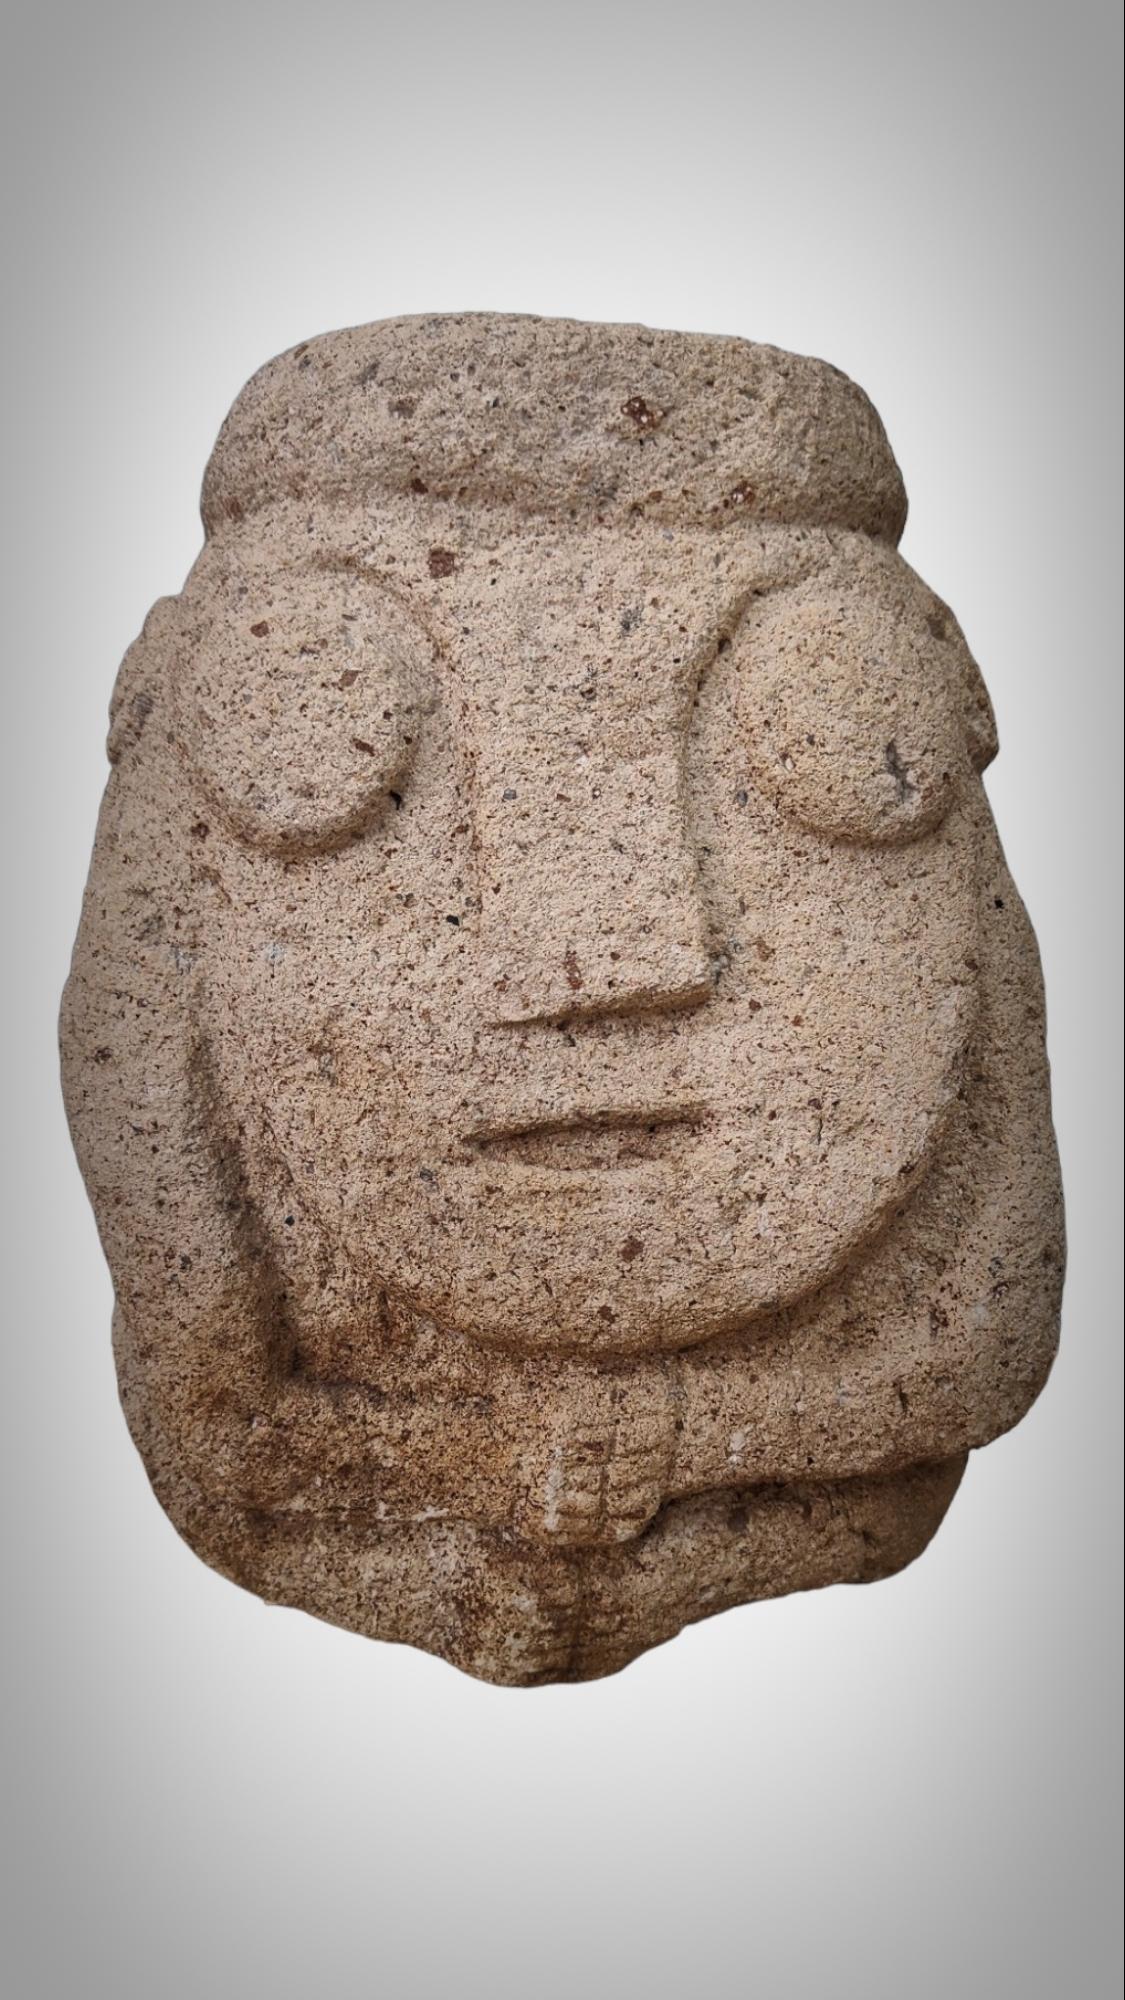 SCULPTURE ANTHROPOMORPHE EN PIERRE DE LA CULTURE RECUAY PERU 400BC-400AC
Recuay est une culture archéologique du Pérou ancien qui s'est développée dans la Sierra de l'actuel département péruvien d'Áncash entre 200 ADS. C. jusqu'à 600 d. C. Elle